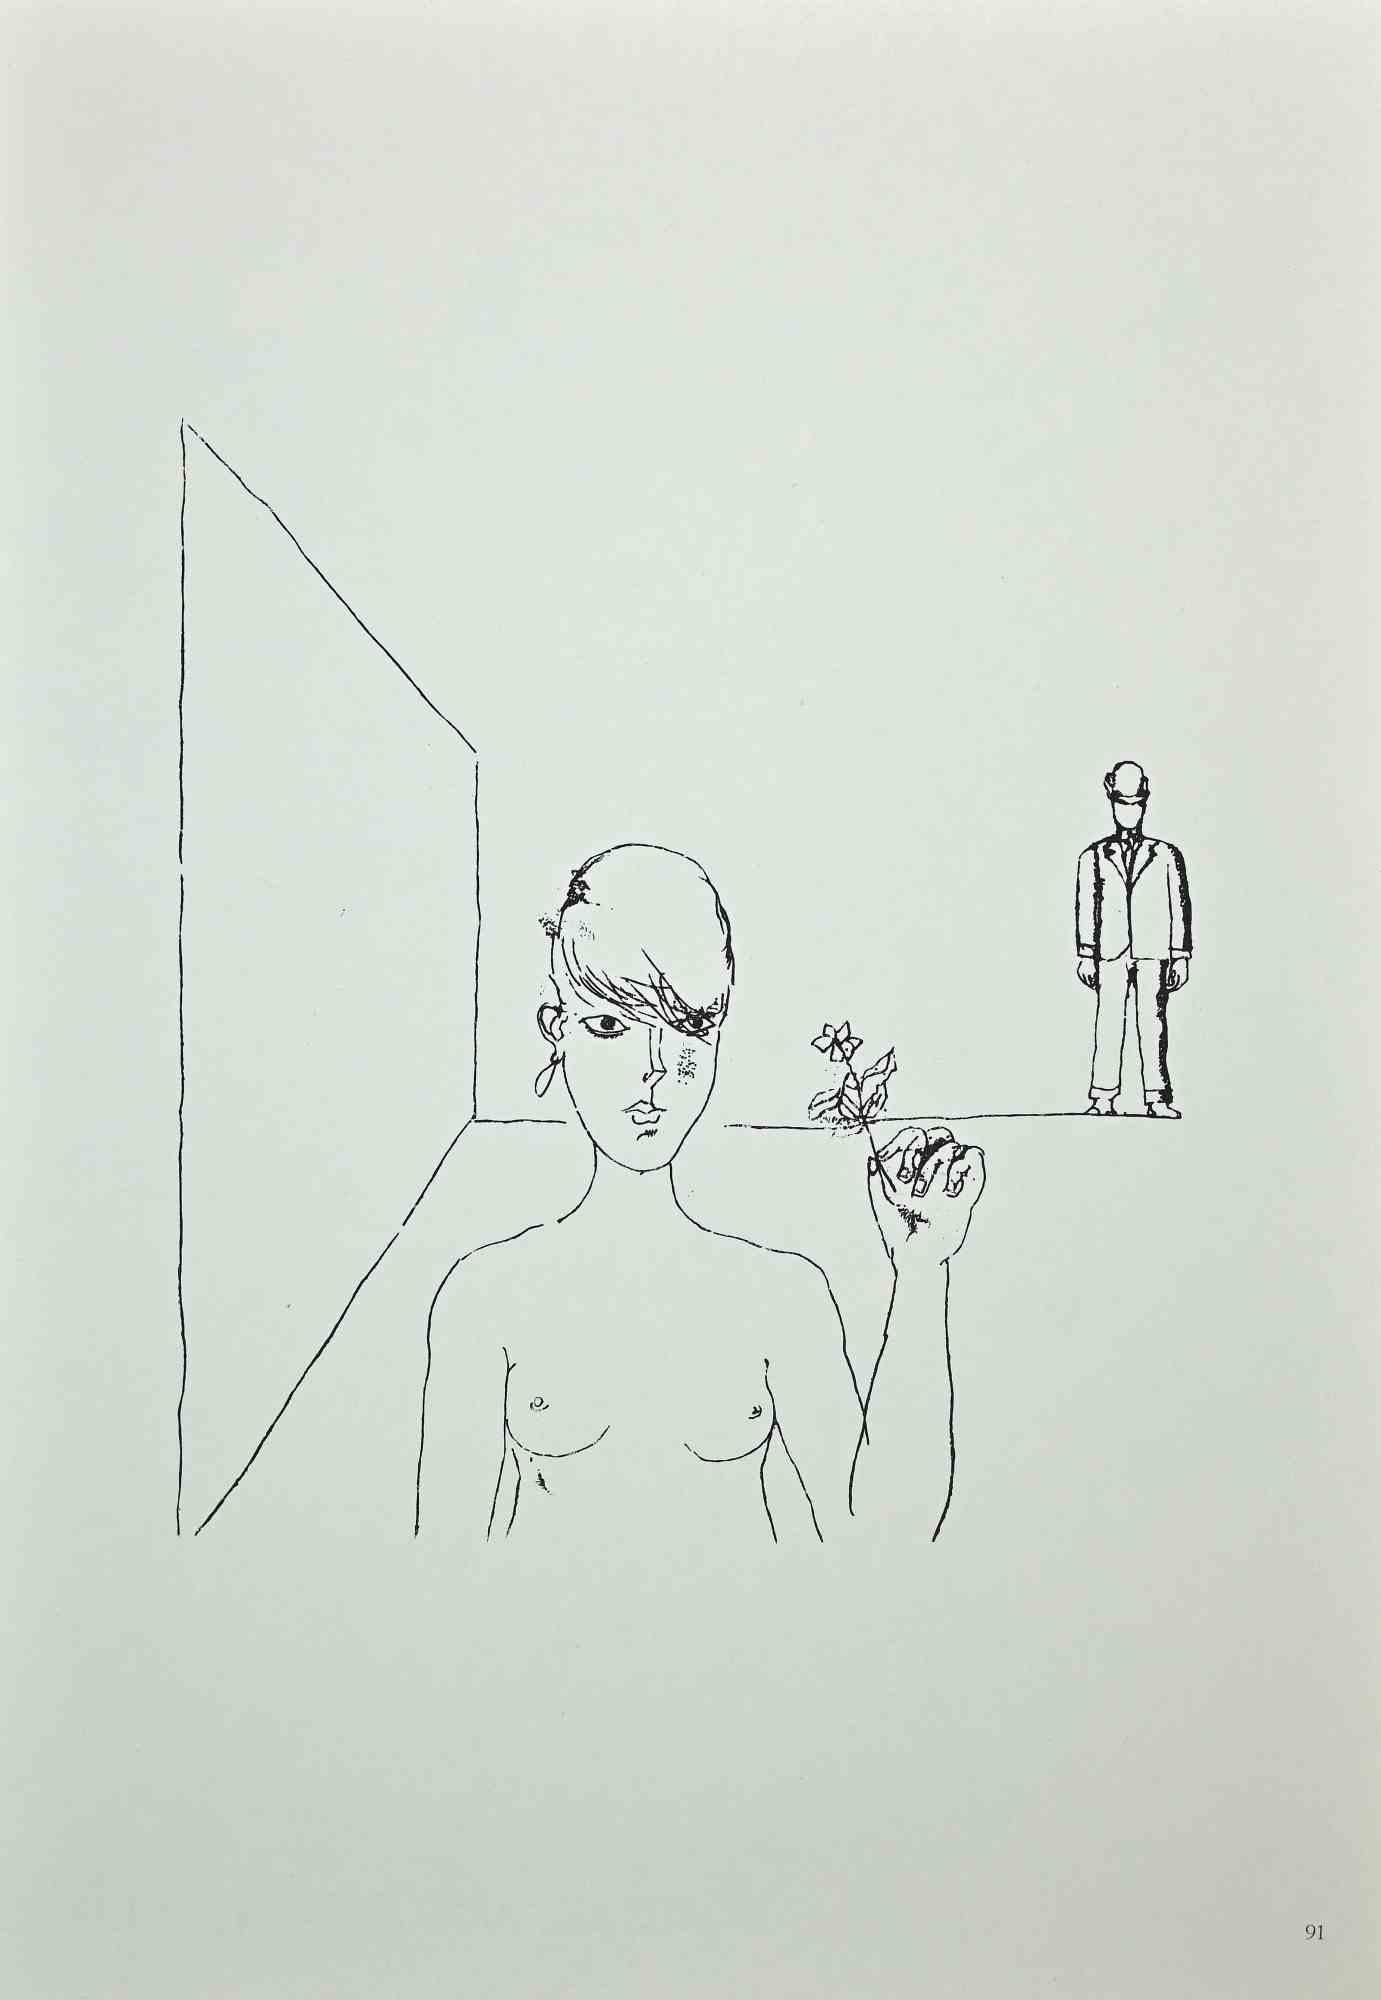 La fleur - Imprimé offset de Franco Gentilini - 1970